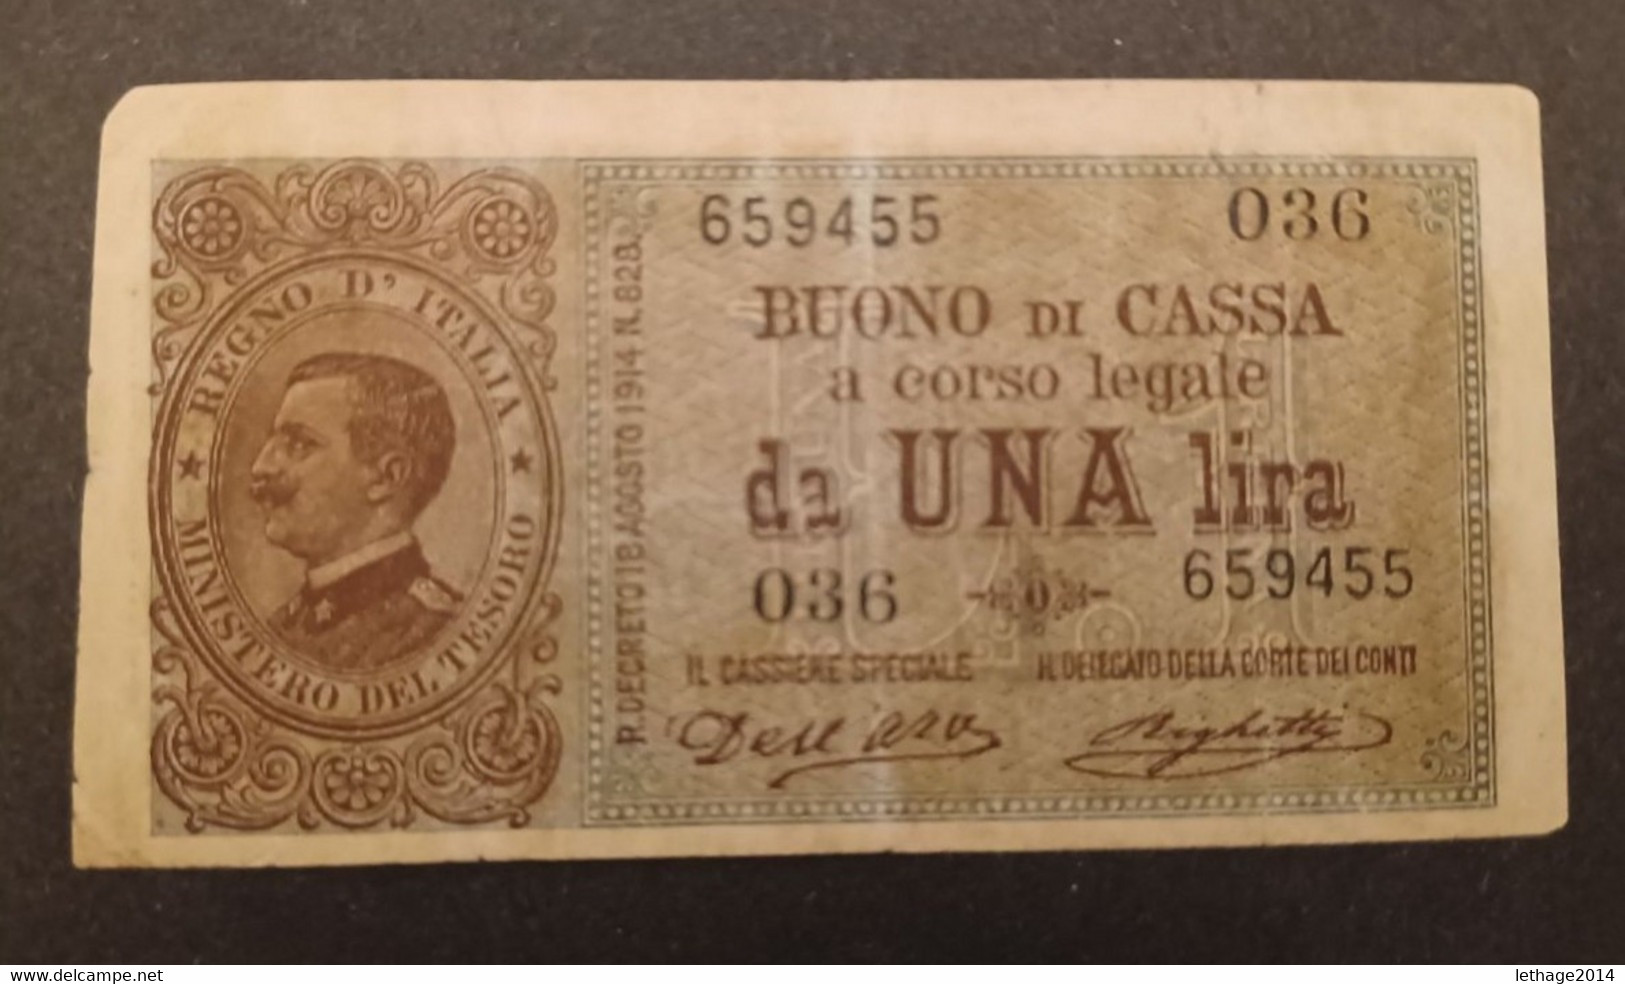 BANCONOTA ITALIA REGNO VENEZIA GIULIA VENEZIA TRIDENTINA VITTORIO 1914 EMANUELE BIGLIETTO DI STATO 1 LIRA - Regno D'Italia – 1 Lira